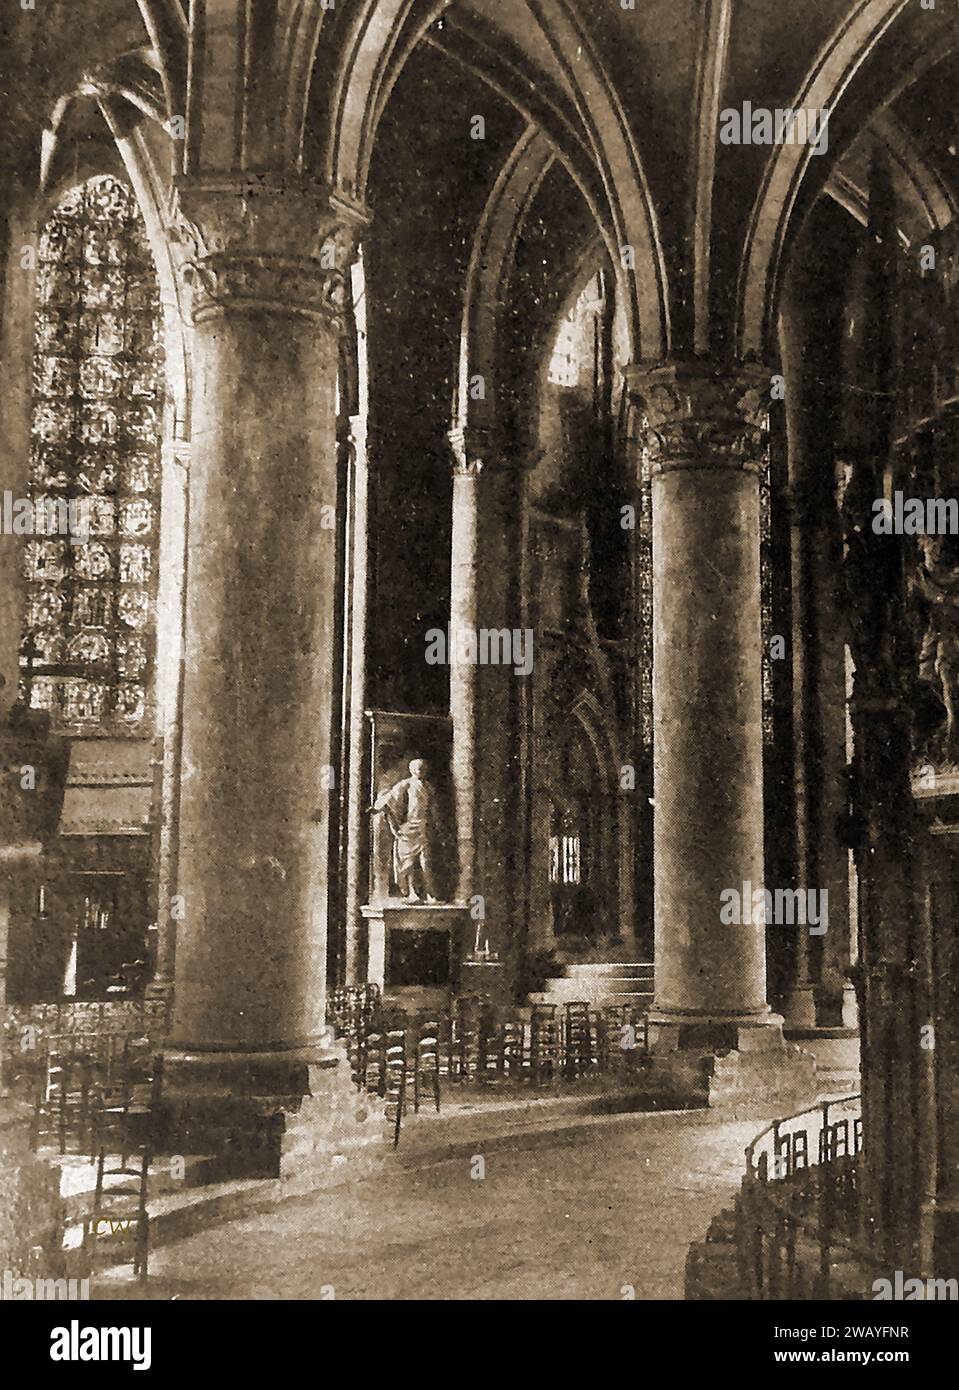 Kathedrale von Chartres, Frankreich 1947 - im Ambulatorium - Cathédrale de Chartres, France en 1947 - Intérieur du Déambulatoire - Stockfoto